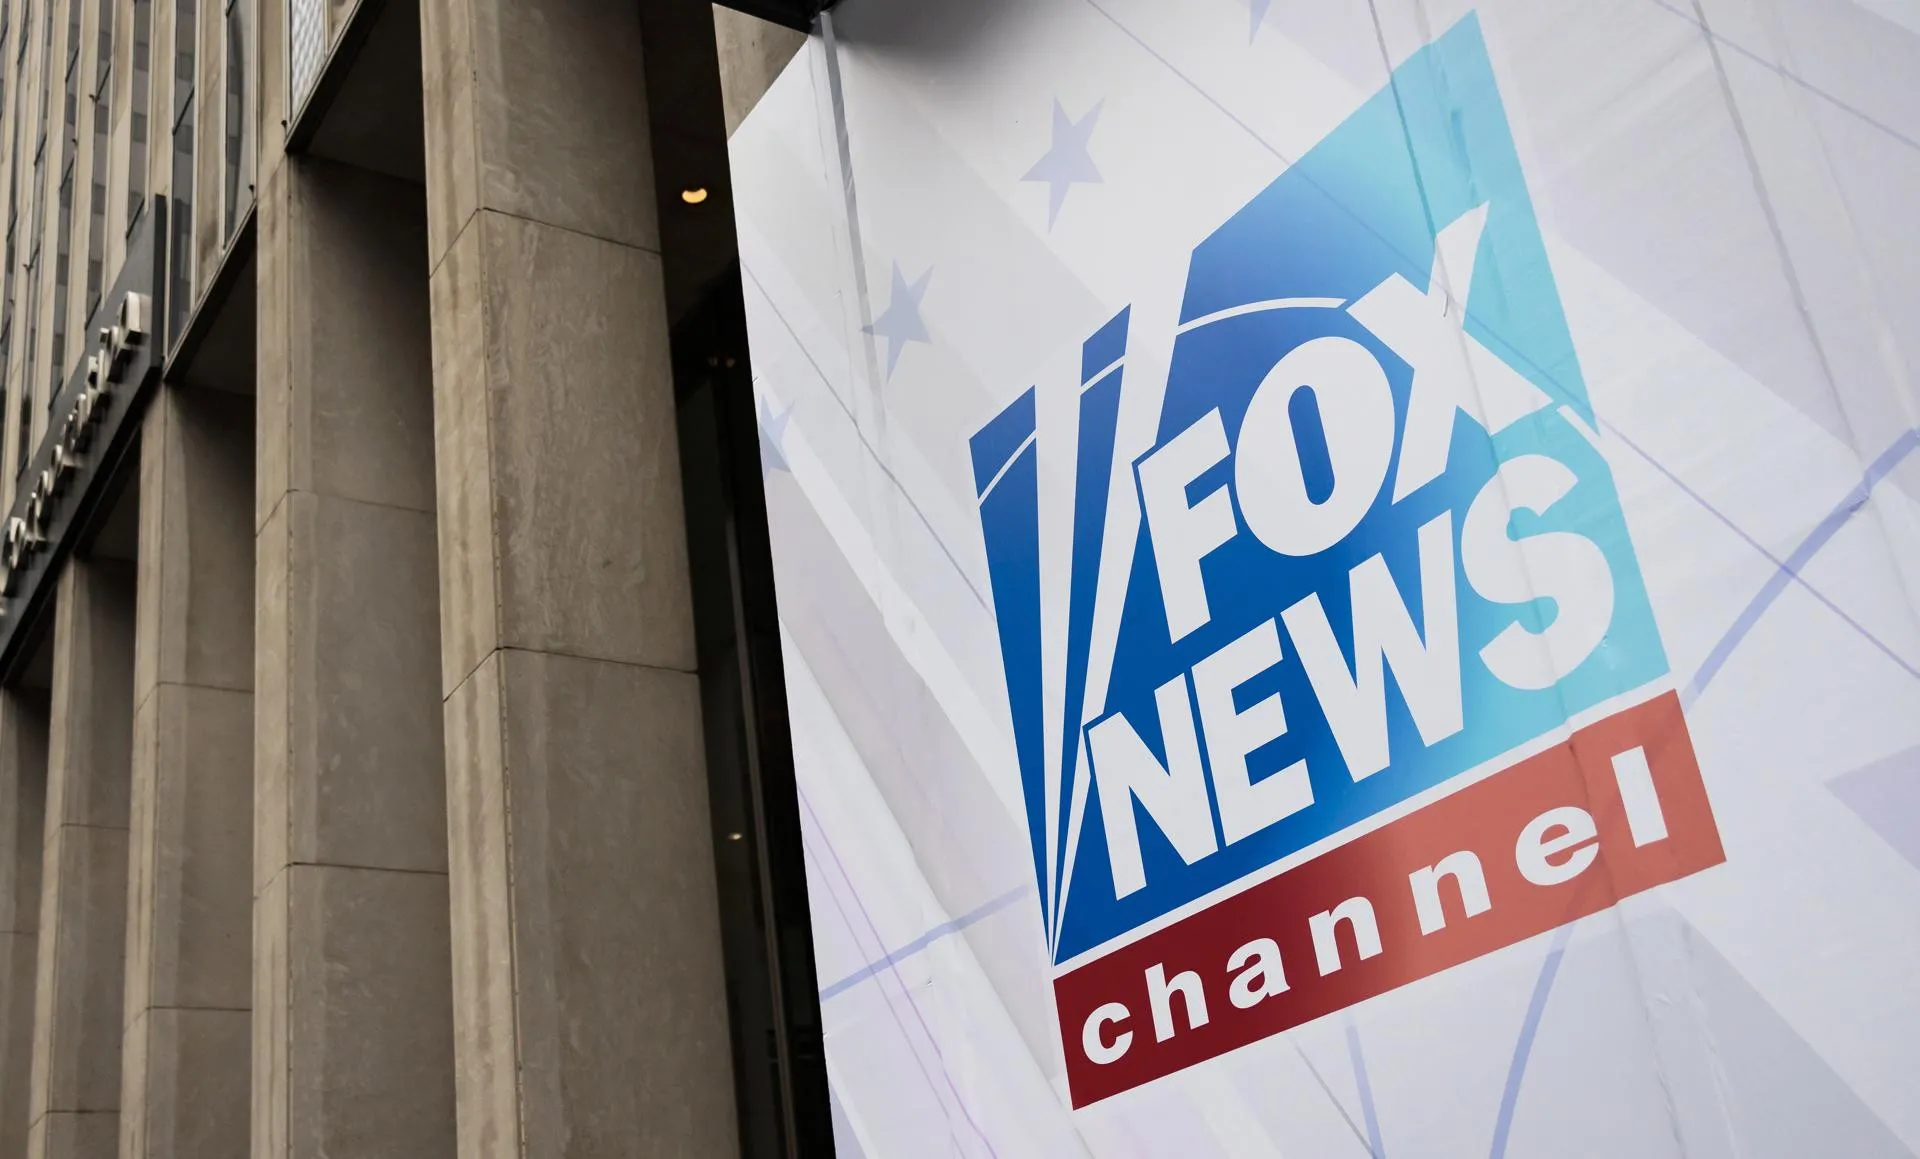 Fox News paga 787 millones para evitar juicio por mentir sobre fraude electoral